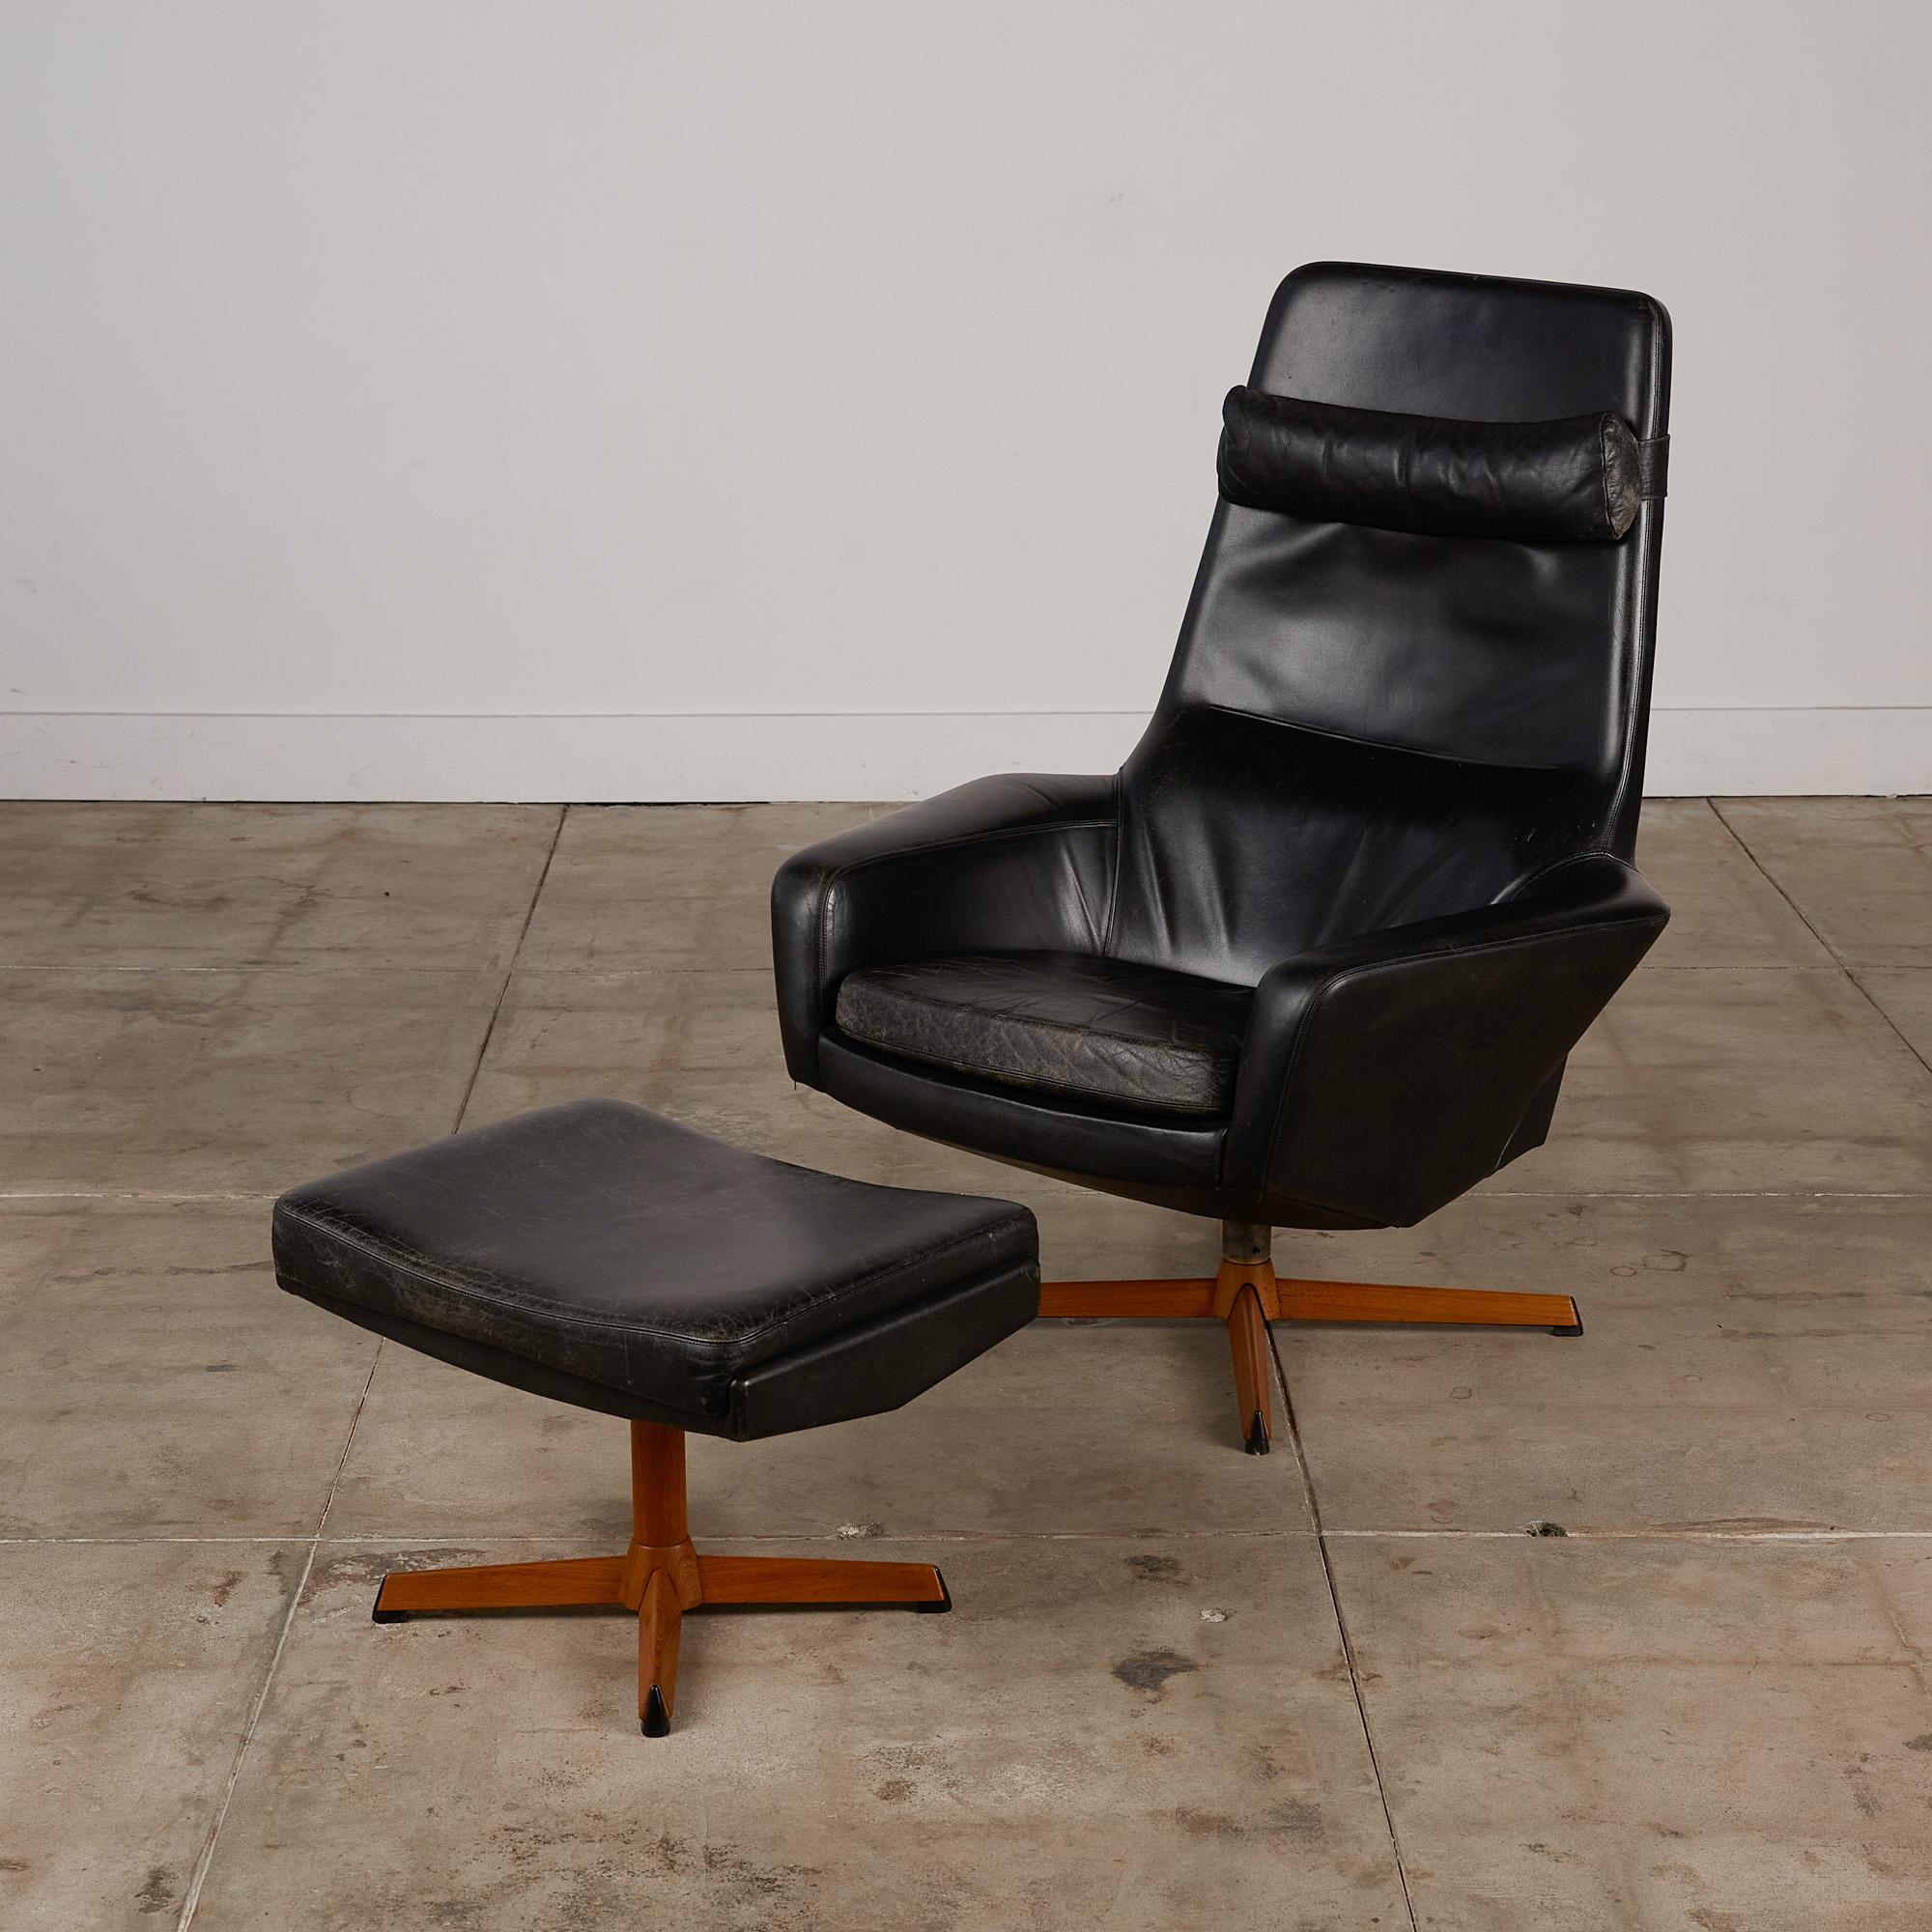 Chaise longue avec ottoman par Ib Madsen pour Madsen & Schübell, Danemark, vers les années 1950. Le fauteuil et l'ottoman ont conservé leur revêtement en cuir noir d'origine et sont dotés de plusieurs réglages permettant d'ajuster confortablement